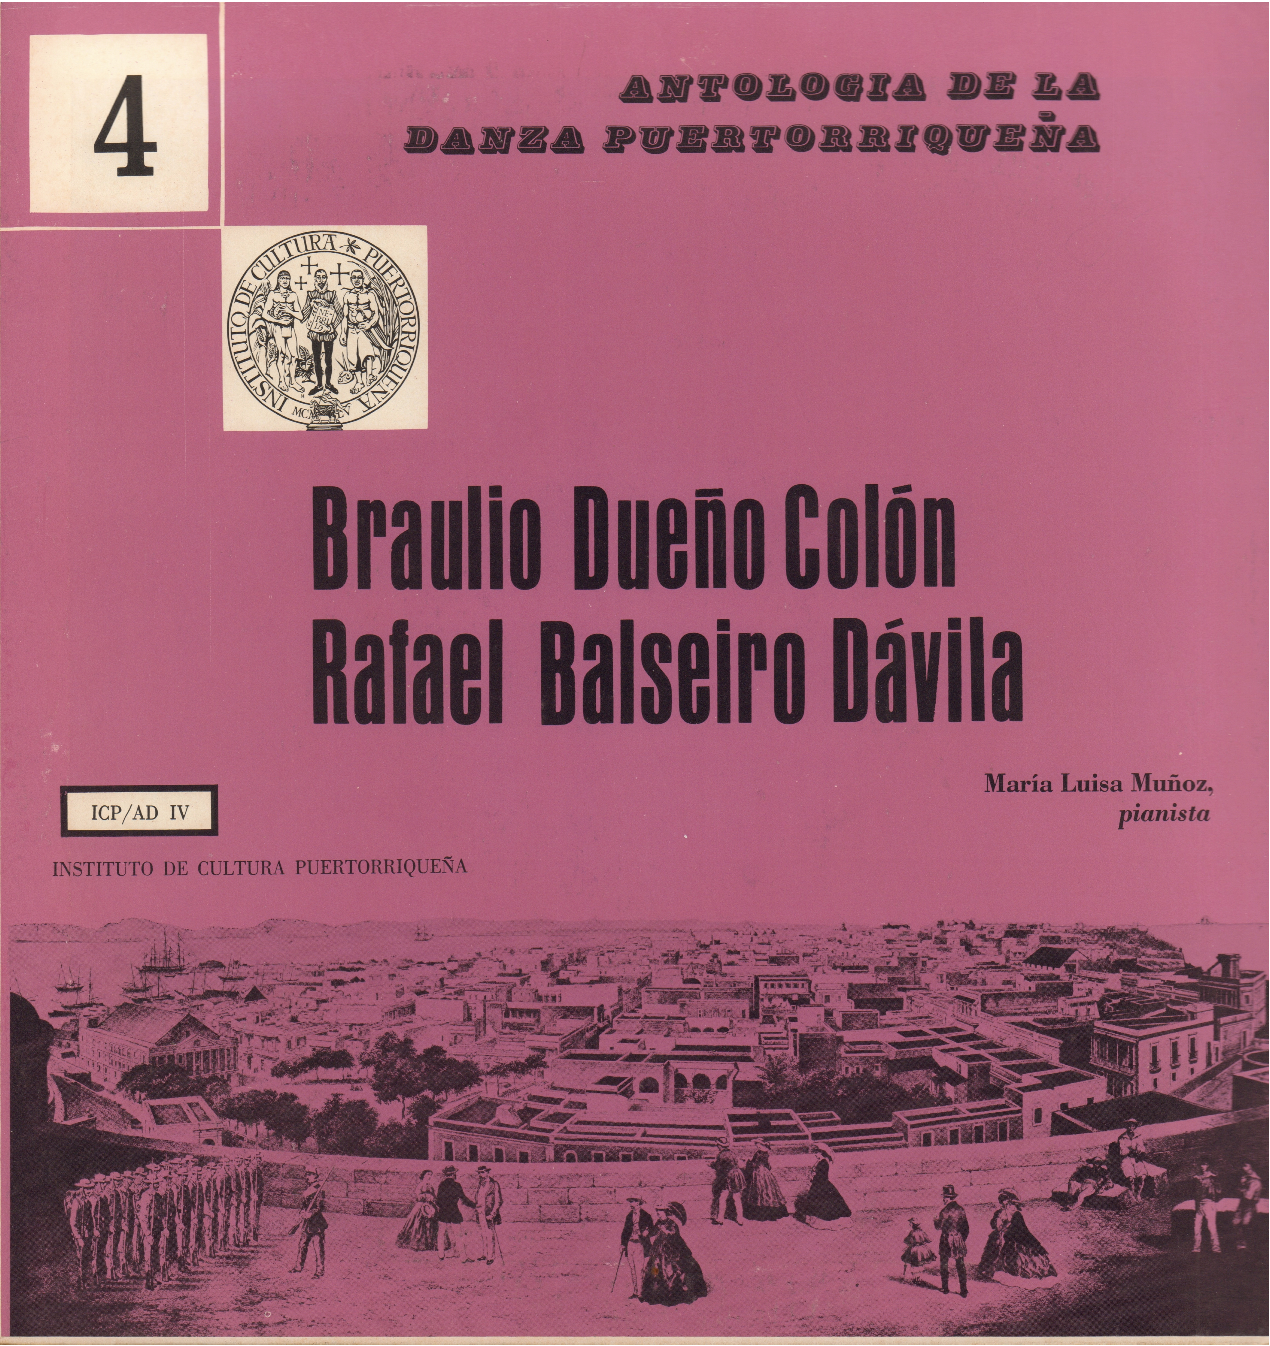 Danzas de Braulio Dueño Colón y Rafael Balseiro Dávila